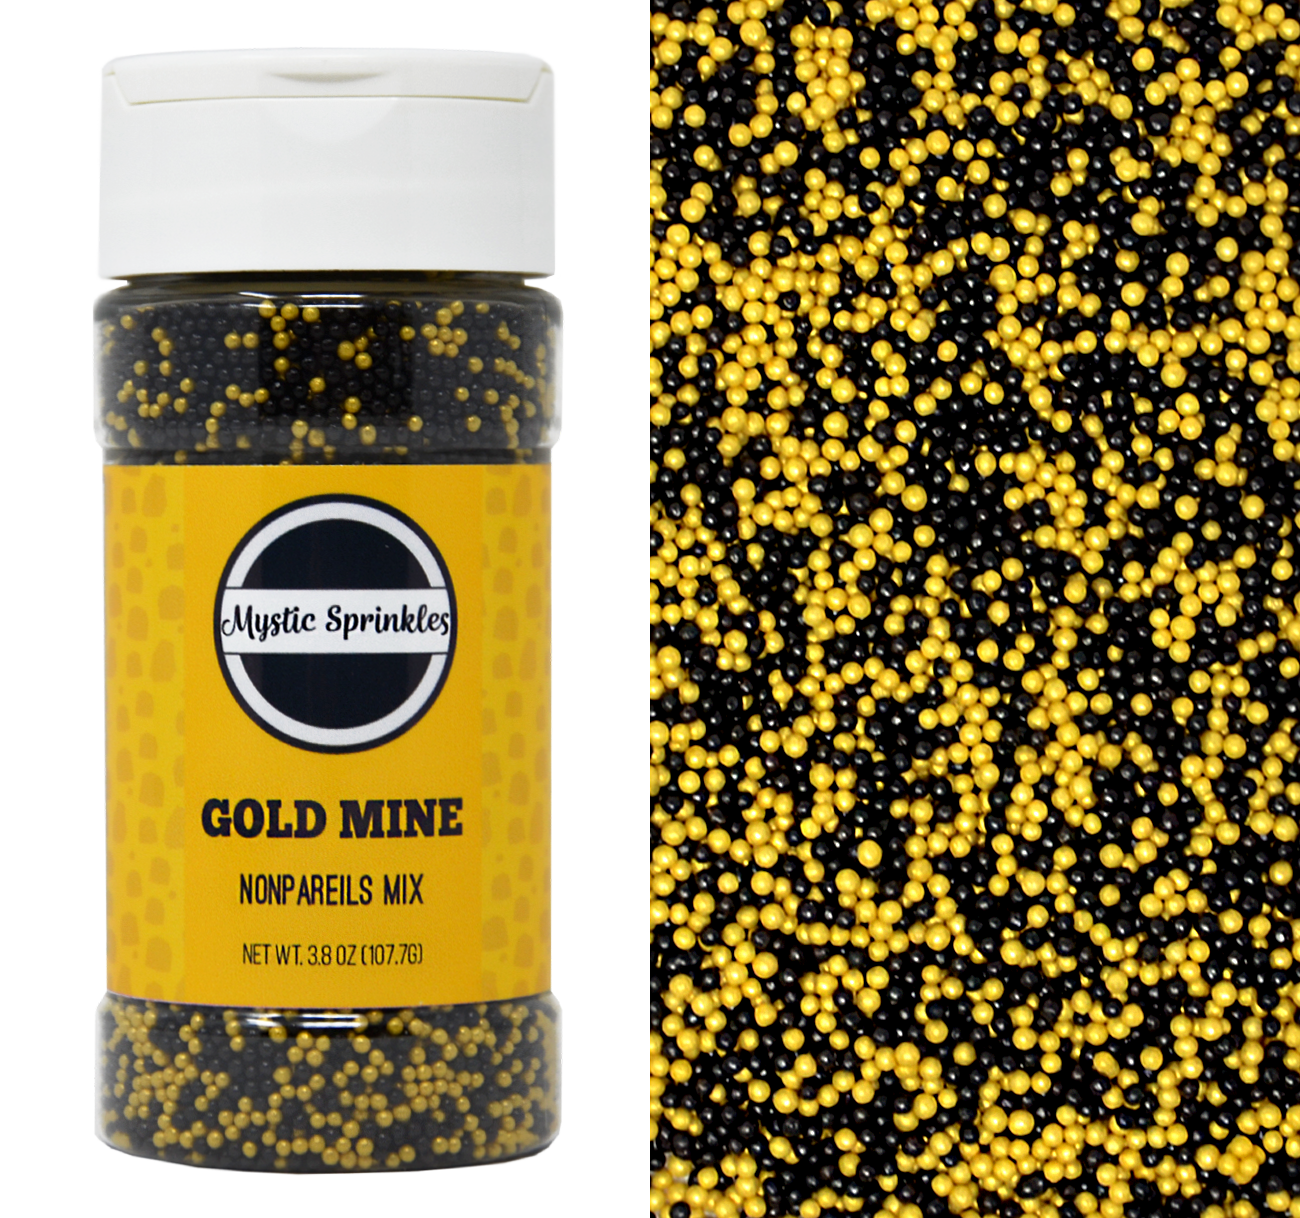 Mystic Sprinkles Nonpareil Sprinkle Mixes (Gold Mine Nonpareils Mix 3.8oz)